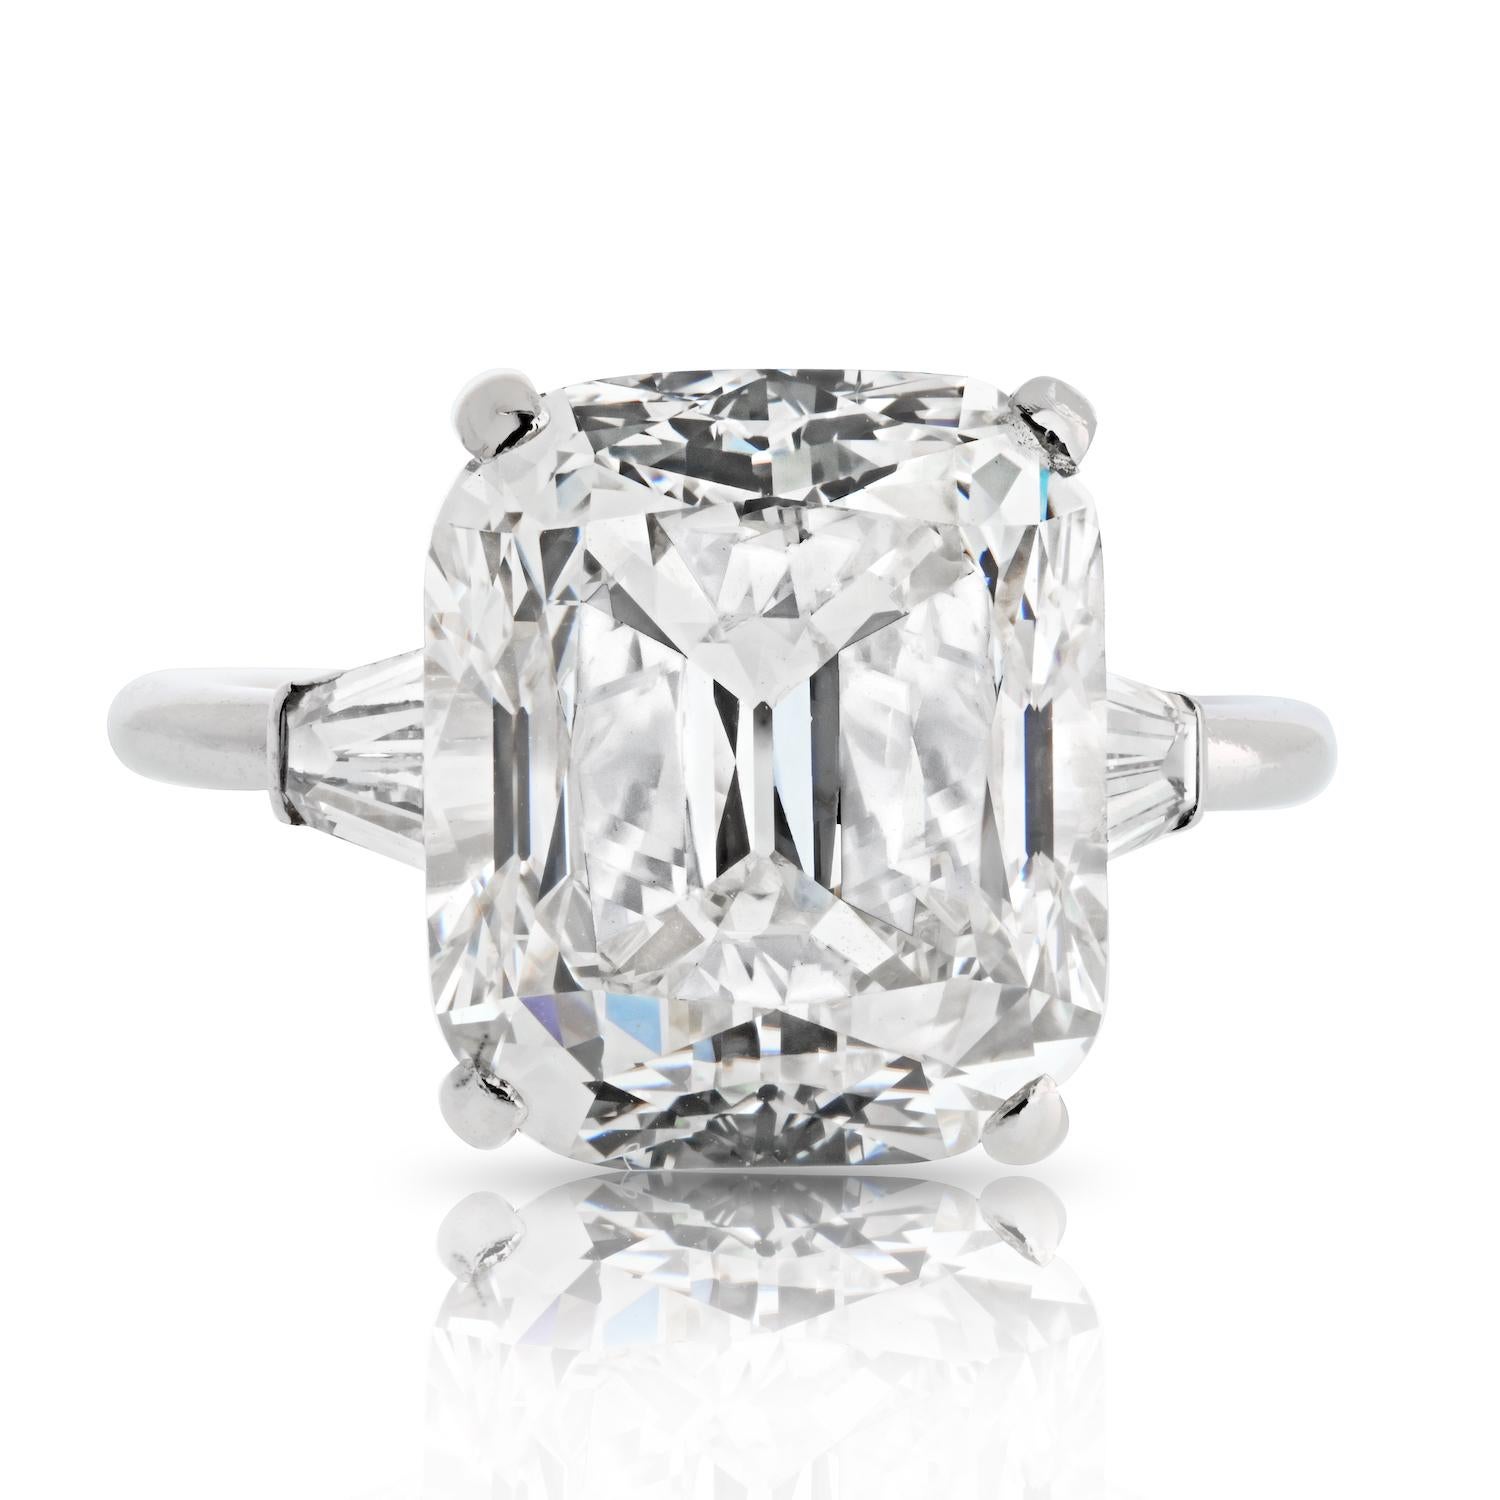 Laissez-vous séduire par l'allure intemporelle de cette extraordinaire bague de fiançailles, ornée d'un spectaculaire diamant coussin de 8,17 carats de taille ancienne certifié par le GIA. 

Doté d'une couleur L, le diamant présente une chaleur